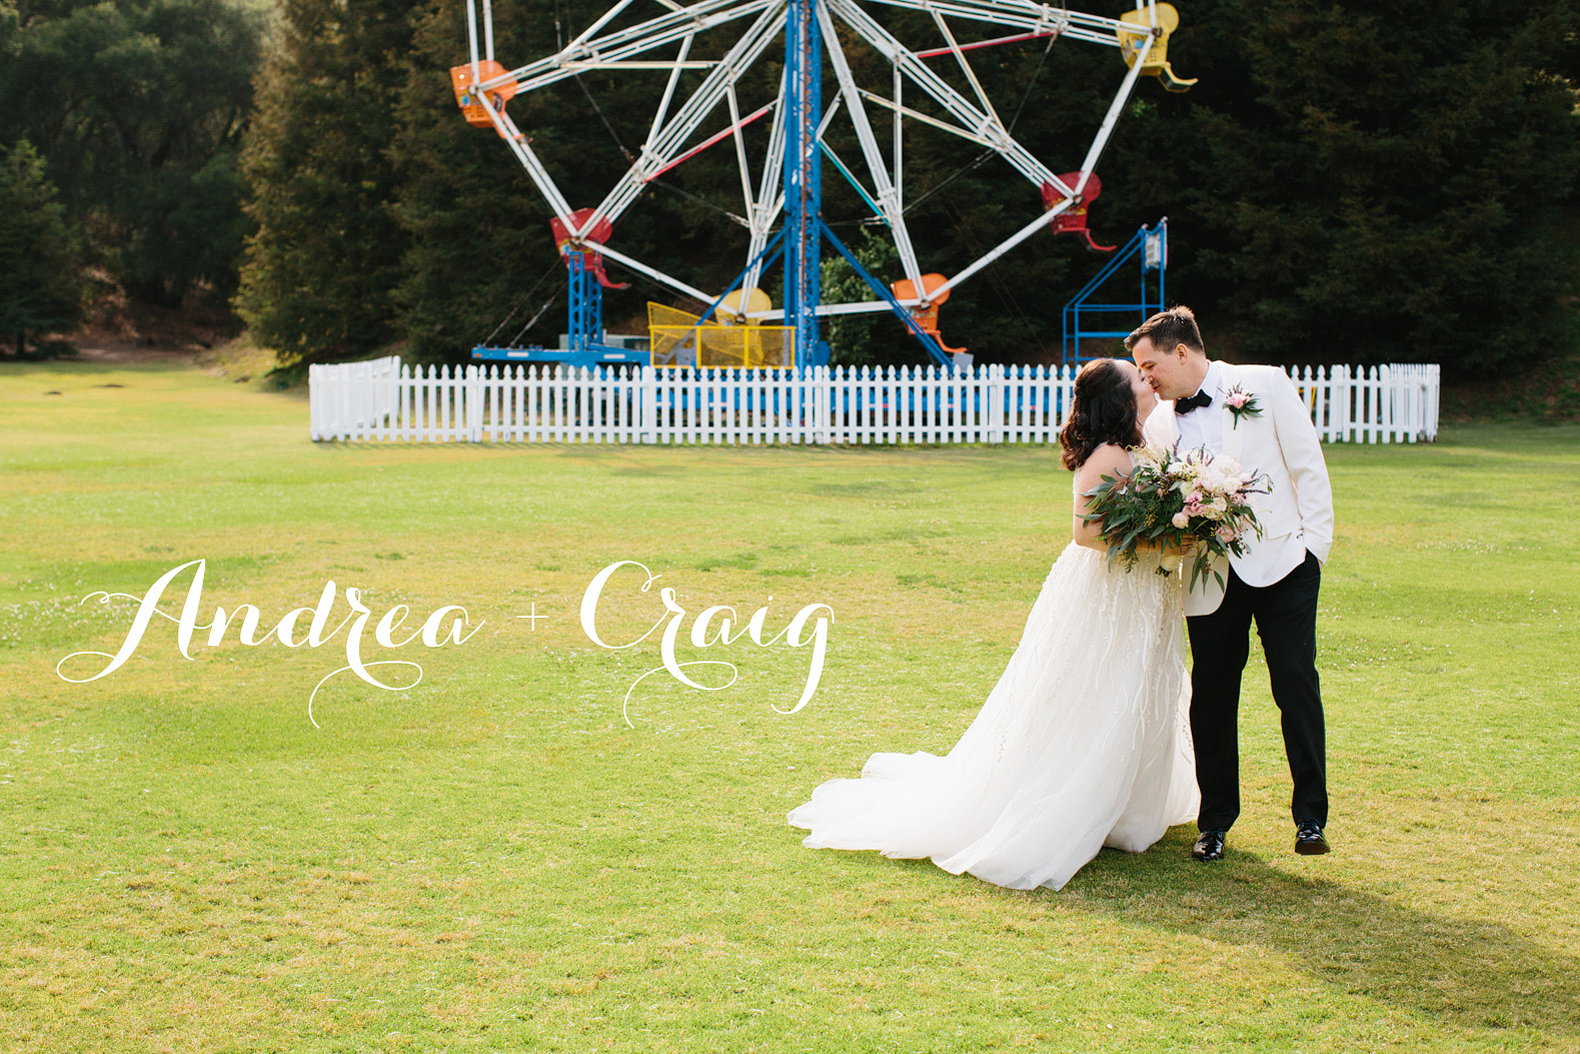 Andrea and Craig's wedding at Calamigos Ranch in Malibu. 